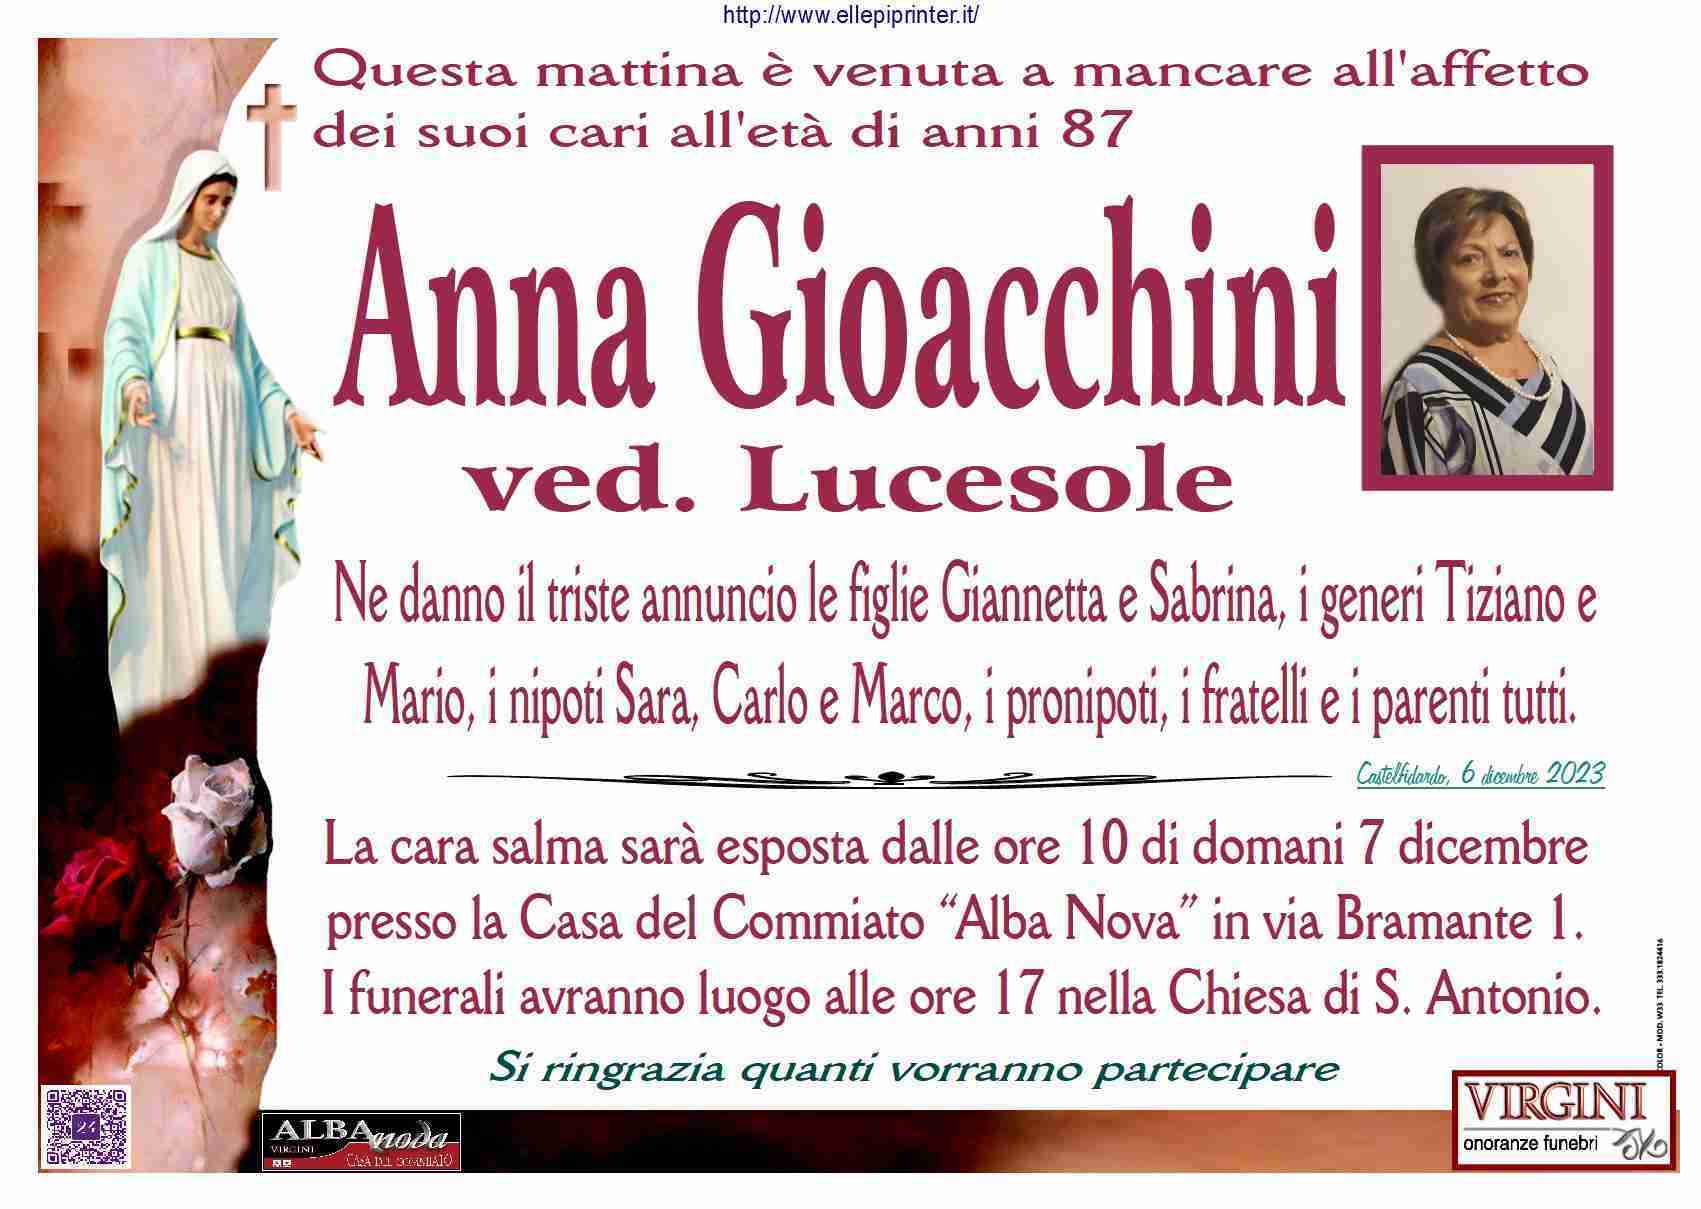 Anna Gioacchini